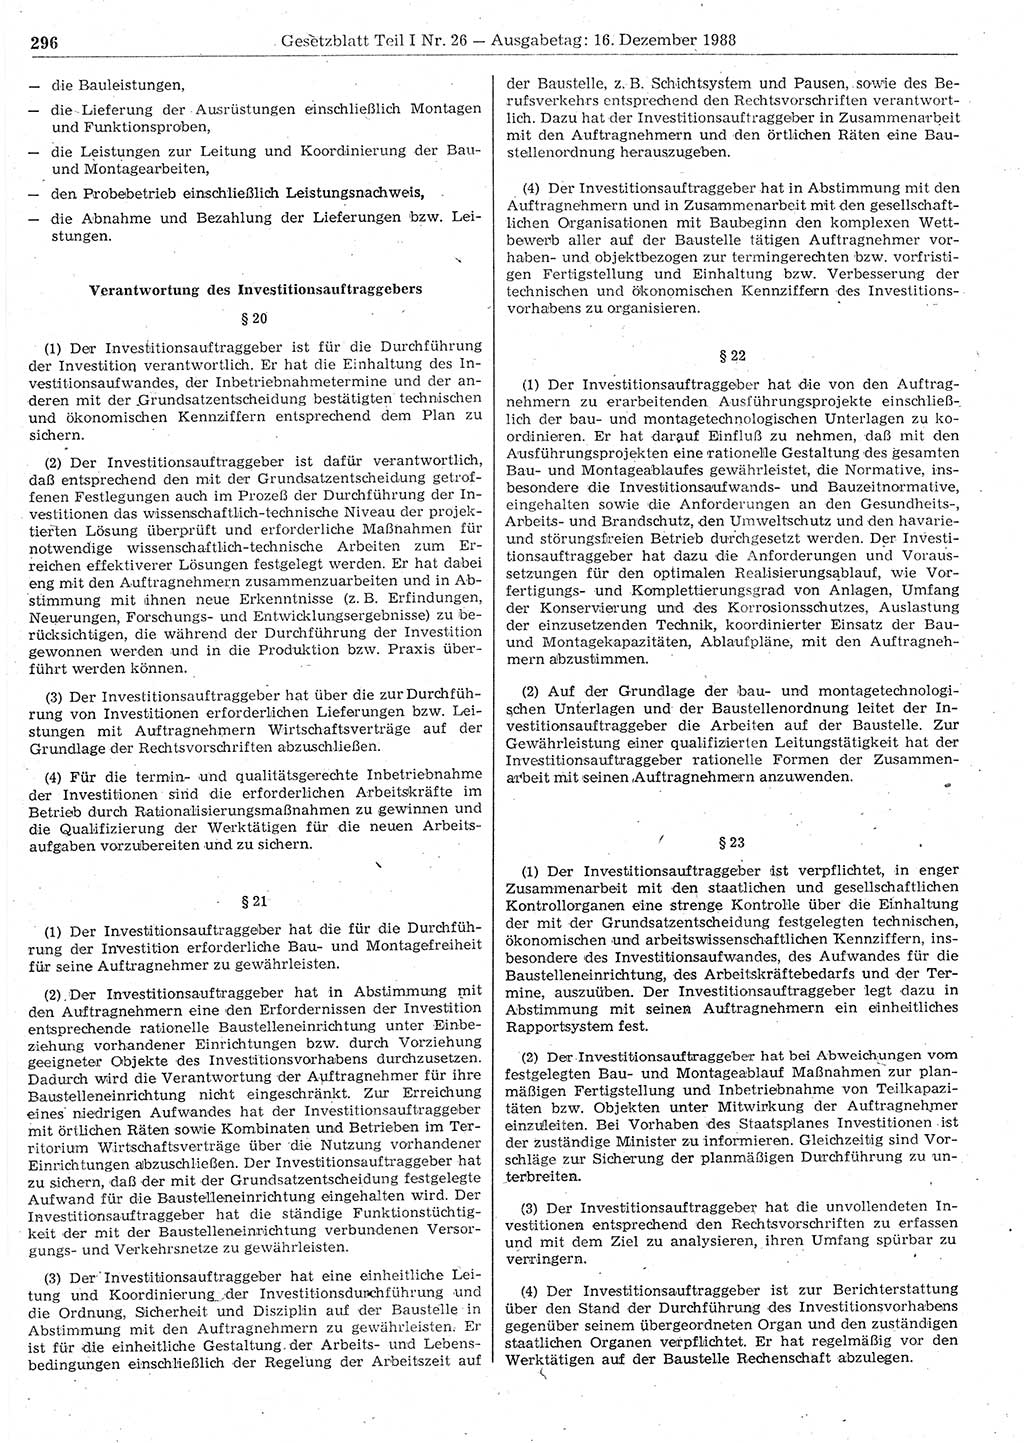 Gesetzblatt (GBl.) der Deutschen Demokratischen Republik (DDR) Teil Ⅰ 1988, Seite 296 (GBl. DDR Ⅰ 1988, S. 296)